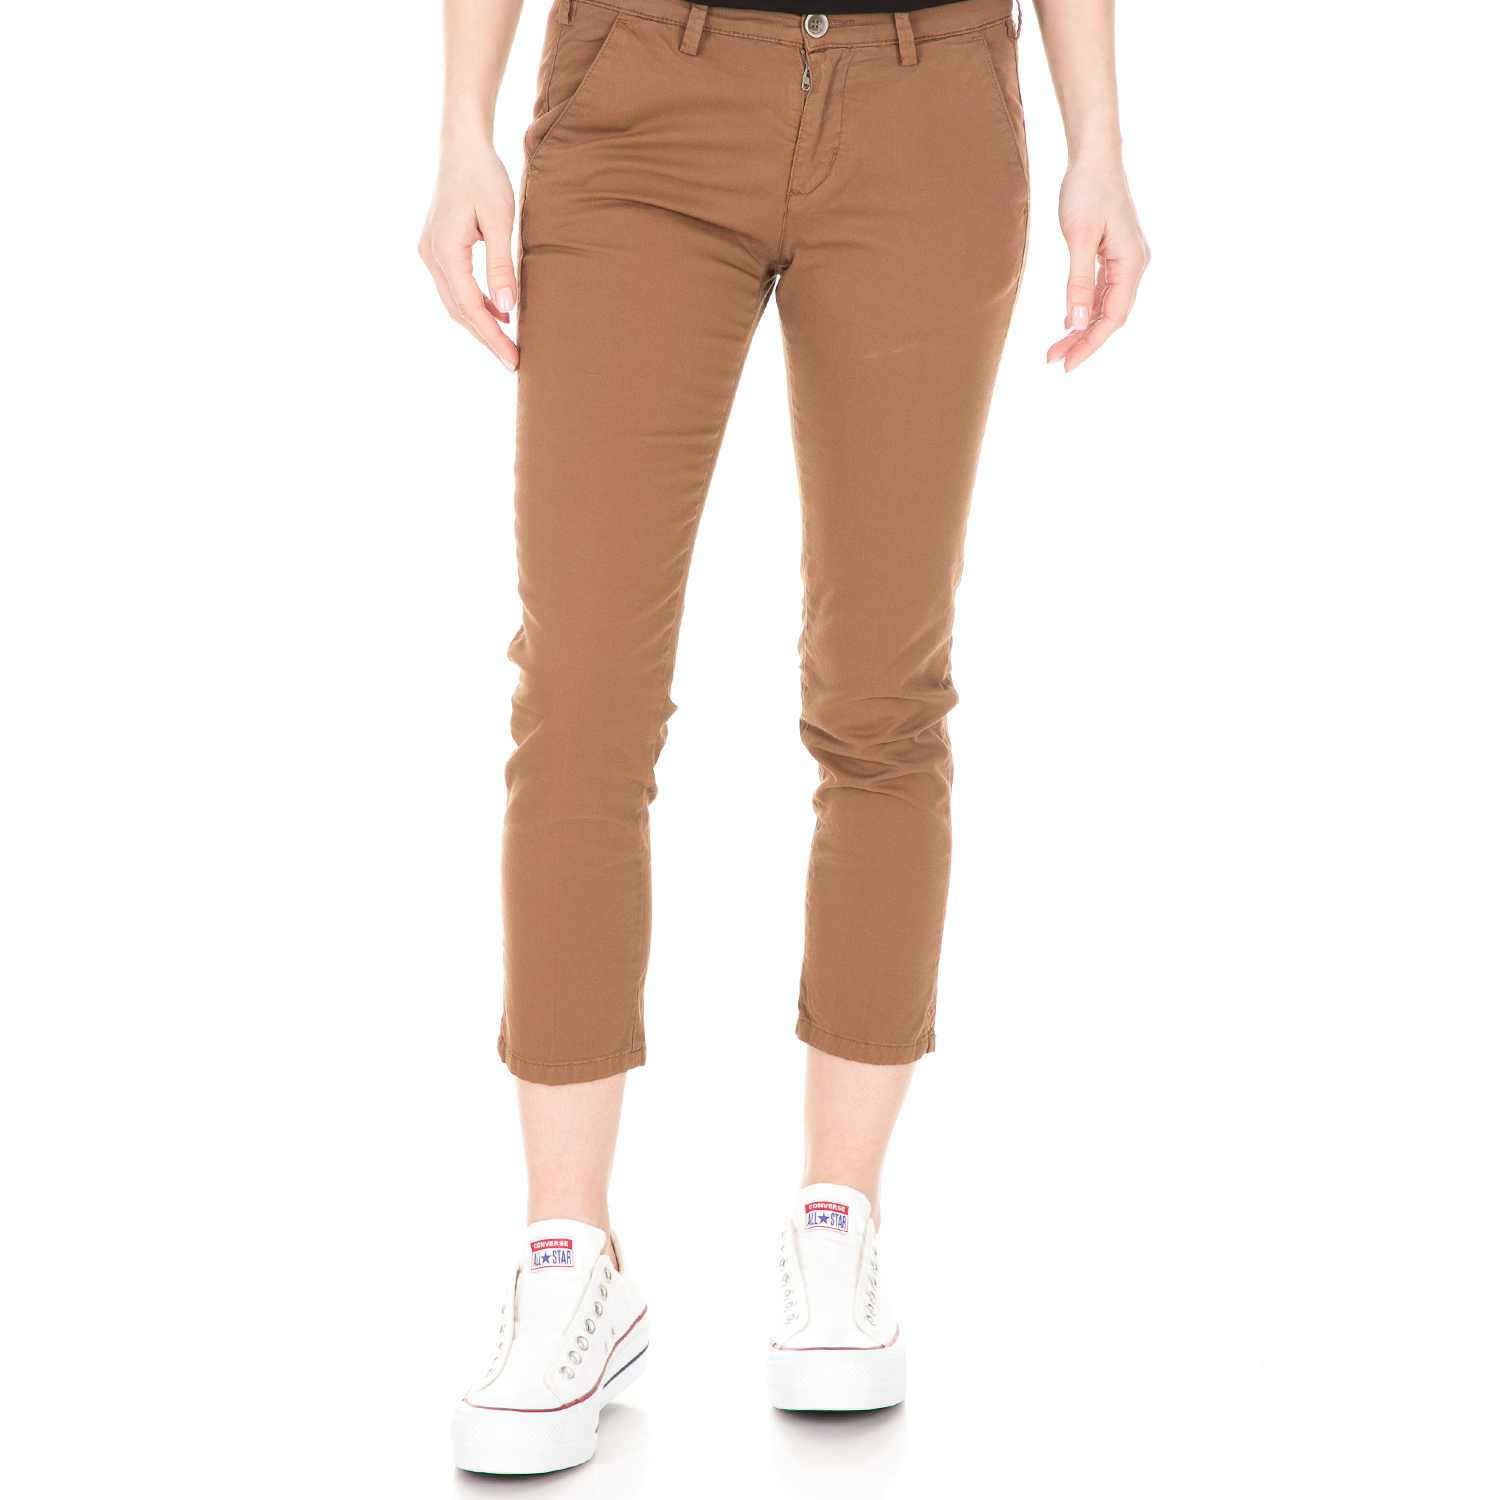 Γυναικεία/Ρούχα/Παντελόνια/Skinny 40-WEFT - Γυναικείο παντελόνι 40-WEFT MELITAS καφέ